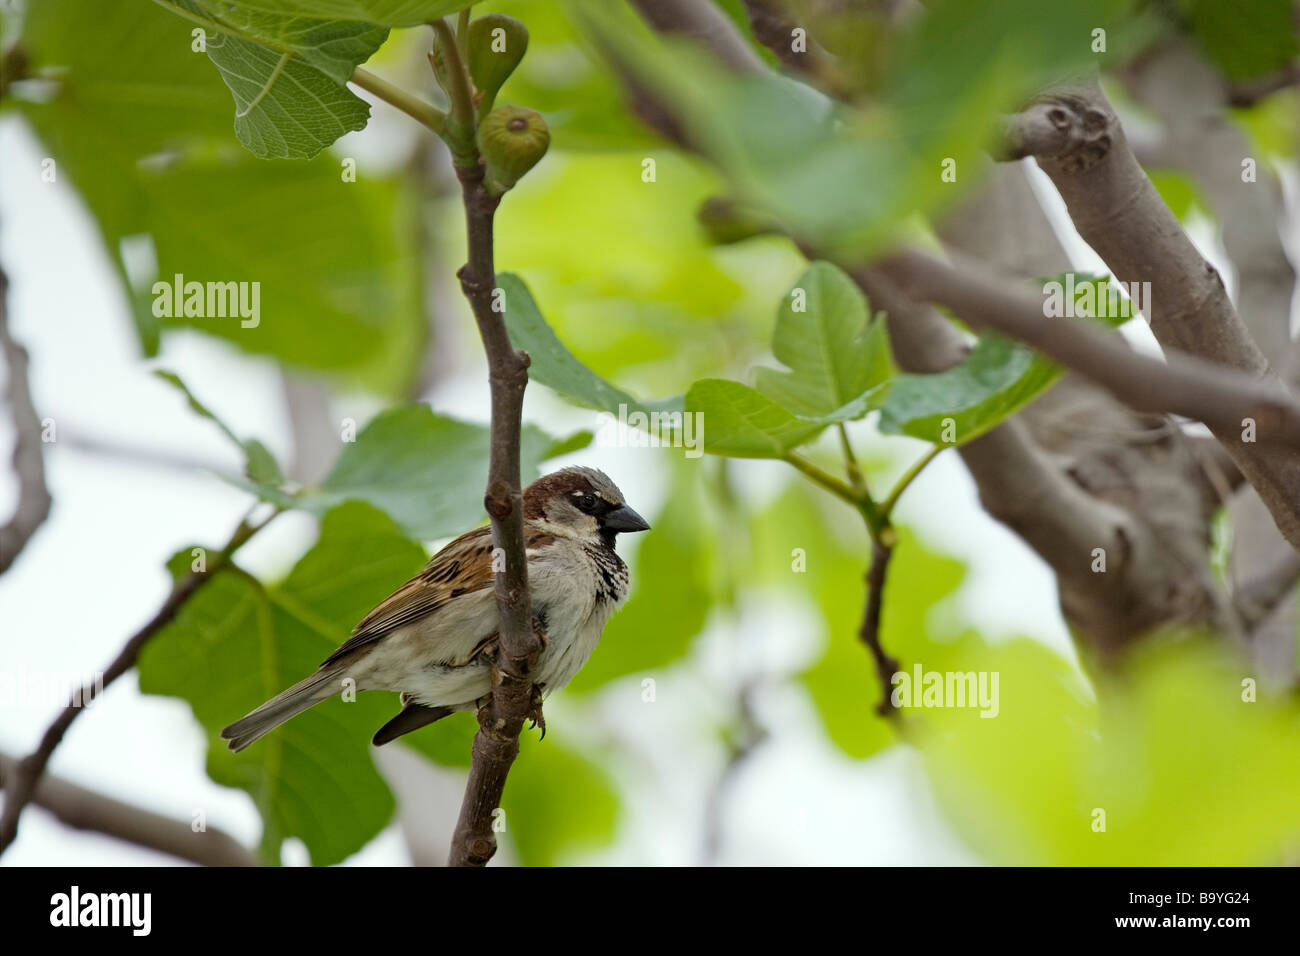 Gorrión en una Higuera Sparrow in a Fig Tree Stock Photo